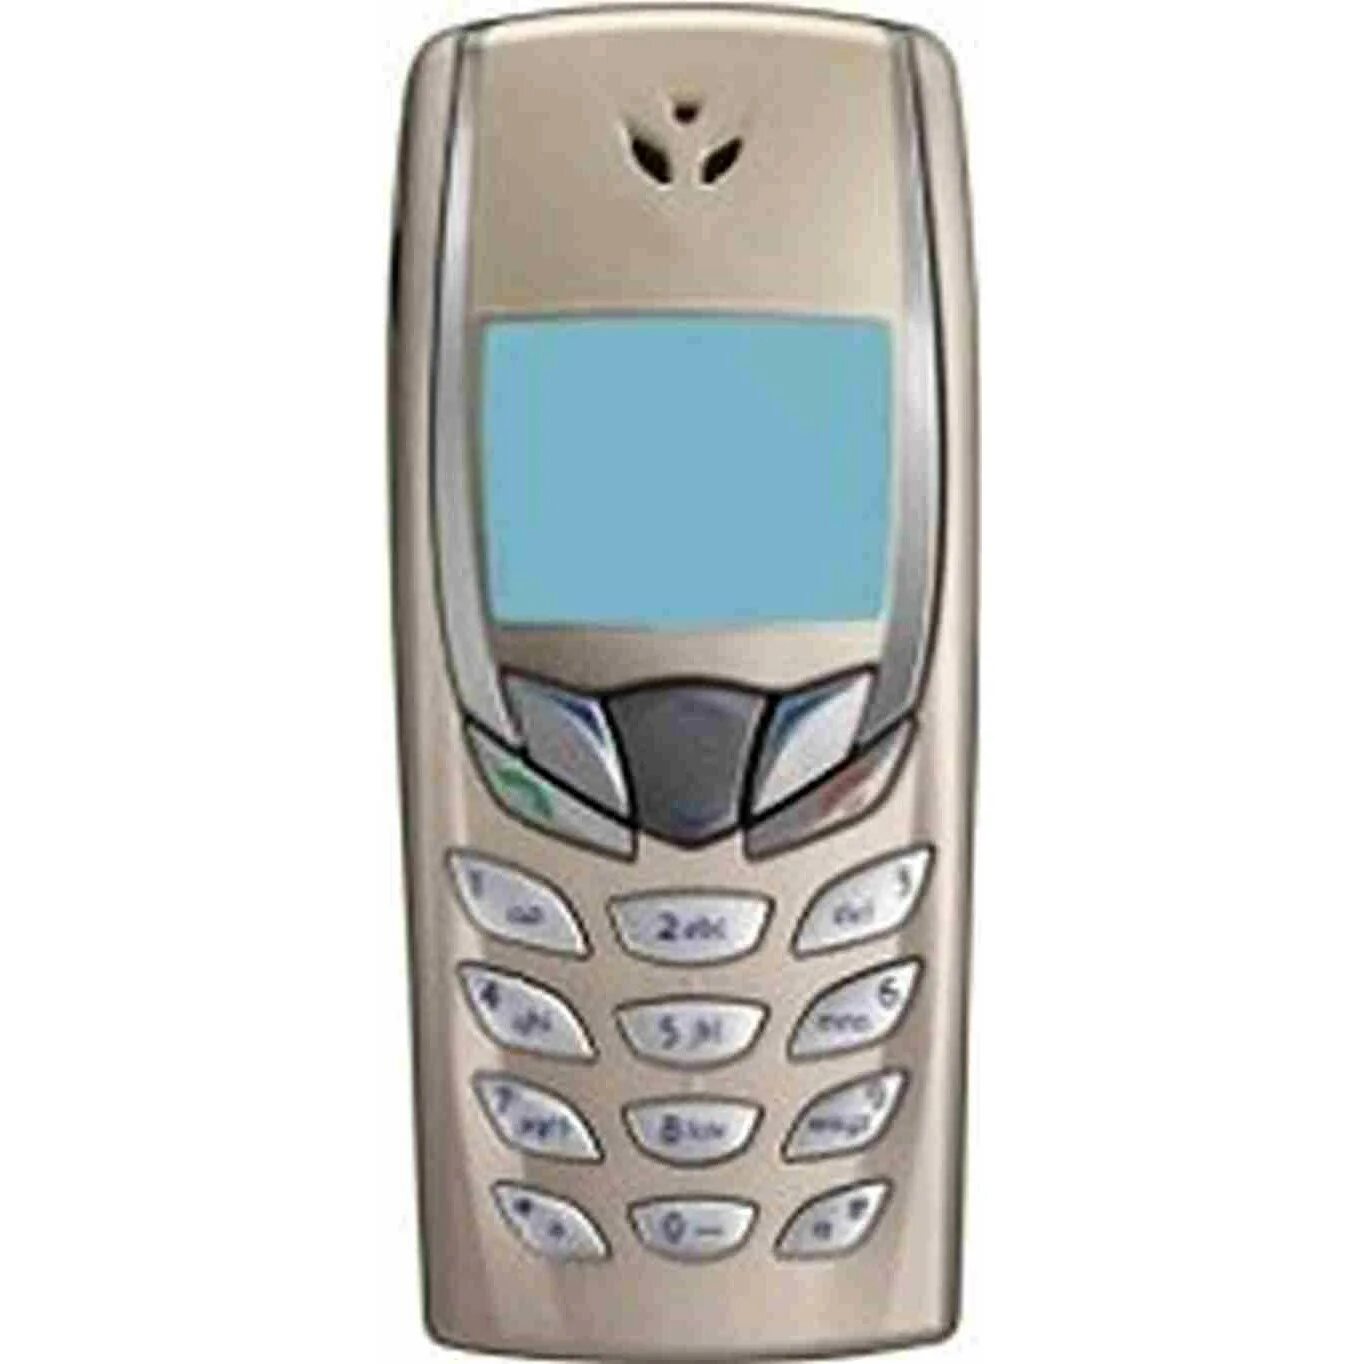 Нокиа маленький телефон. Нокиа 6510i. Телефон Nokia 6510. Nokia 3510i. Nokia 6590i.